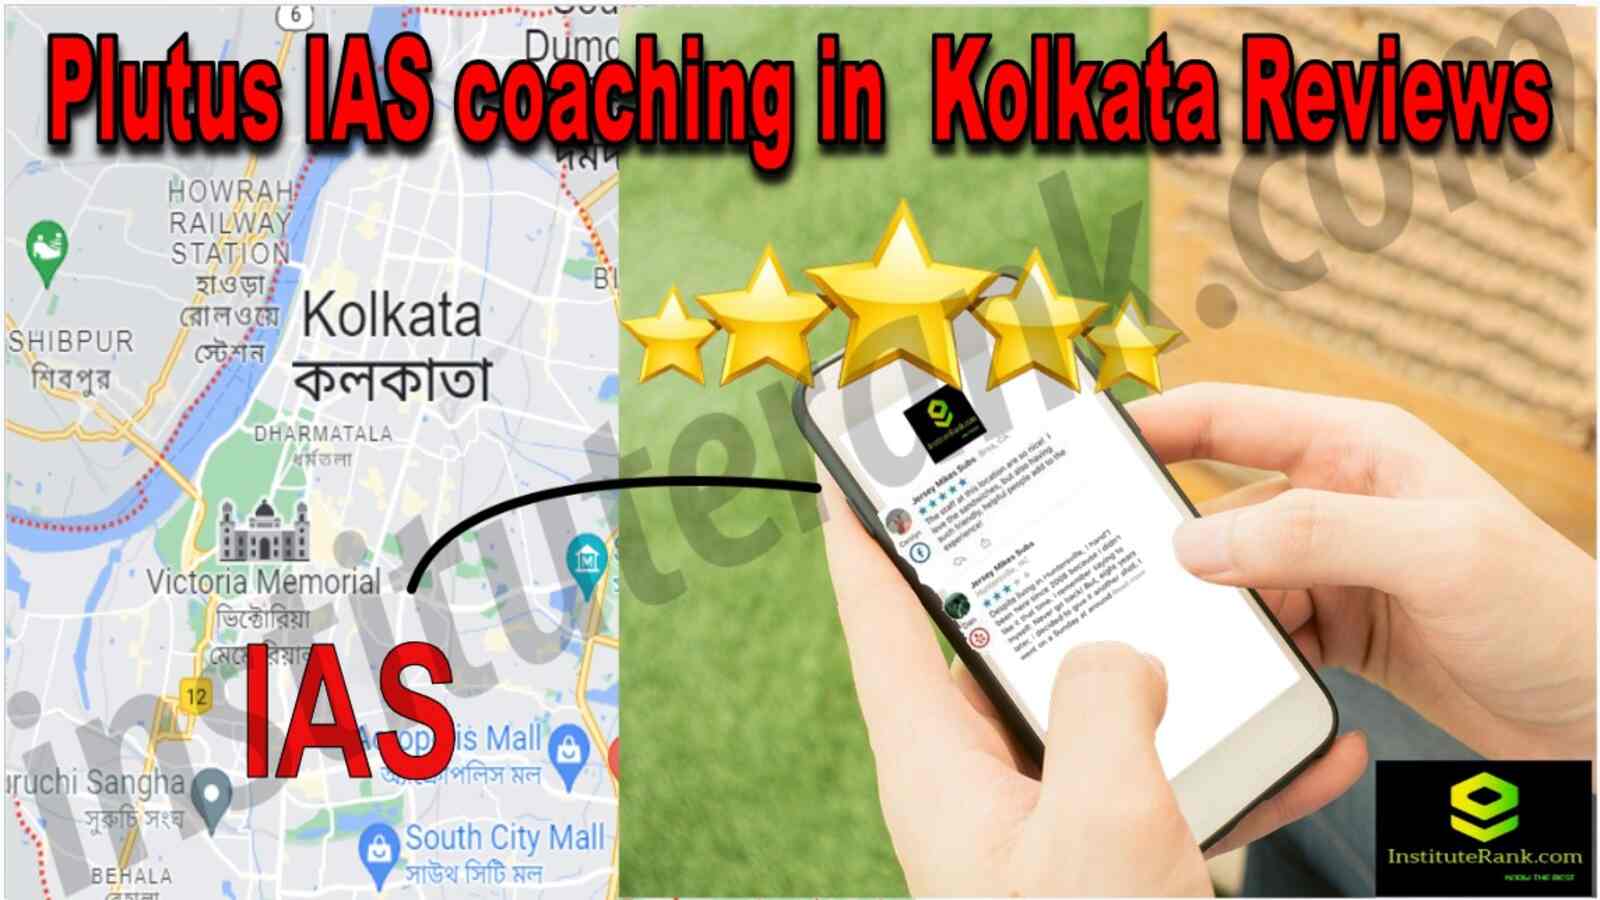 Plutus IAS Coaching in Kolkata Reviews